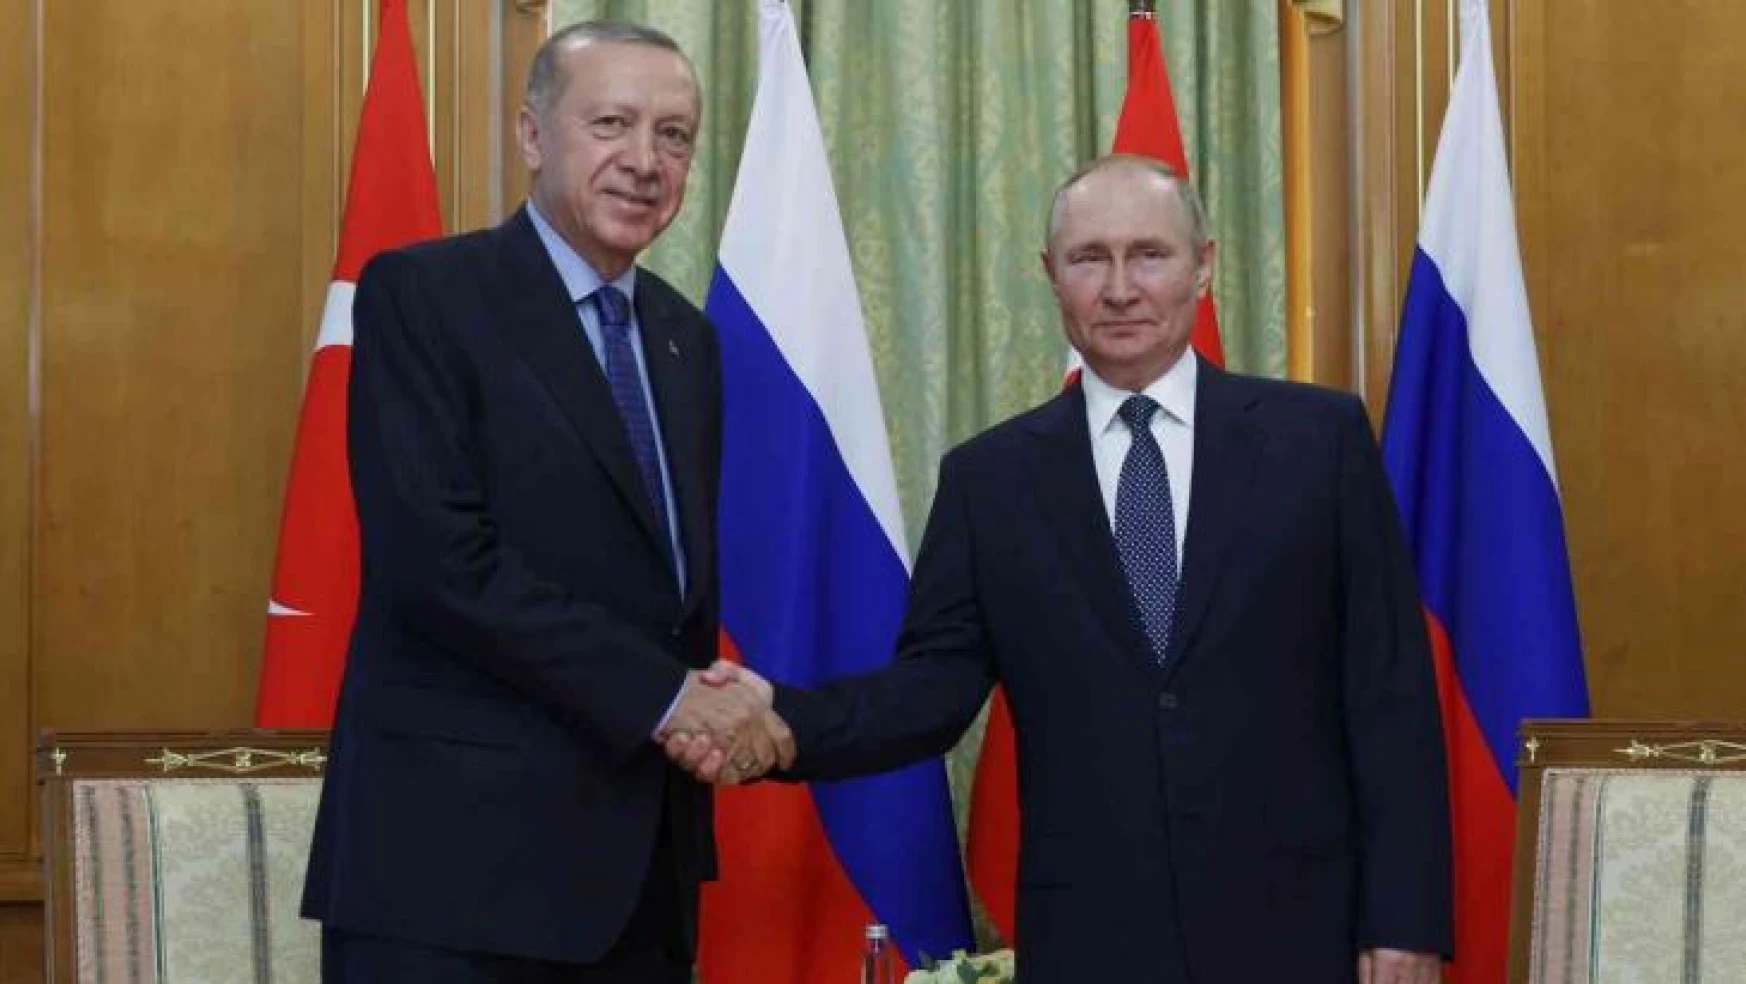 Cumhurbaşkanı Recep Tayyip Erdoğan, Rus mevkidaşı Vladimir Putin ile gerçekleştirdiği görüşmede, 'Suriye'deki gelişmeleri ele almamız rahatlama getirecek' dedi.